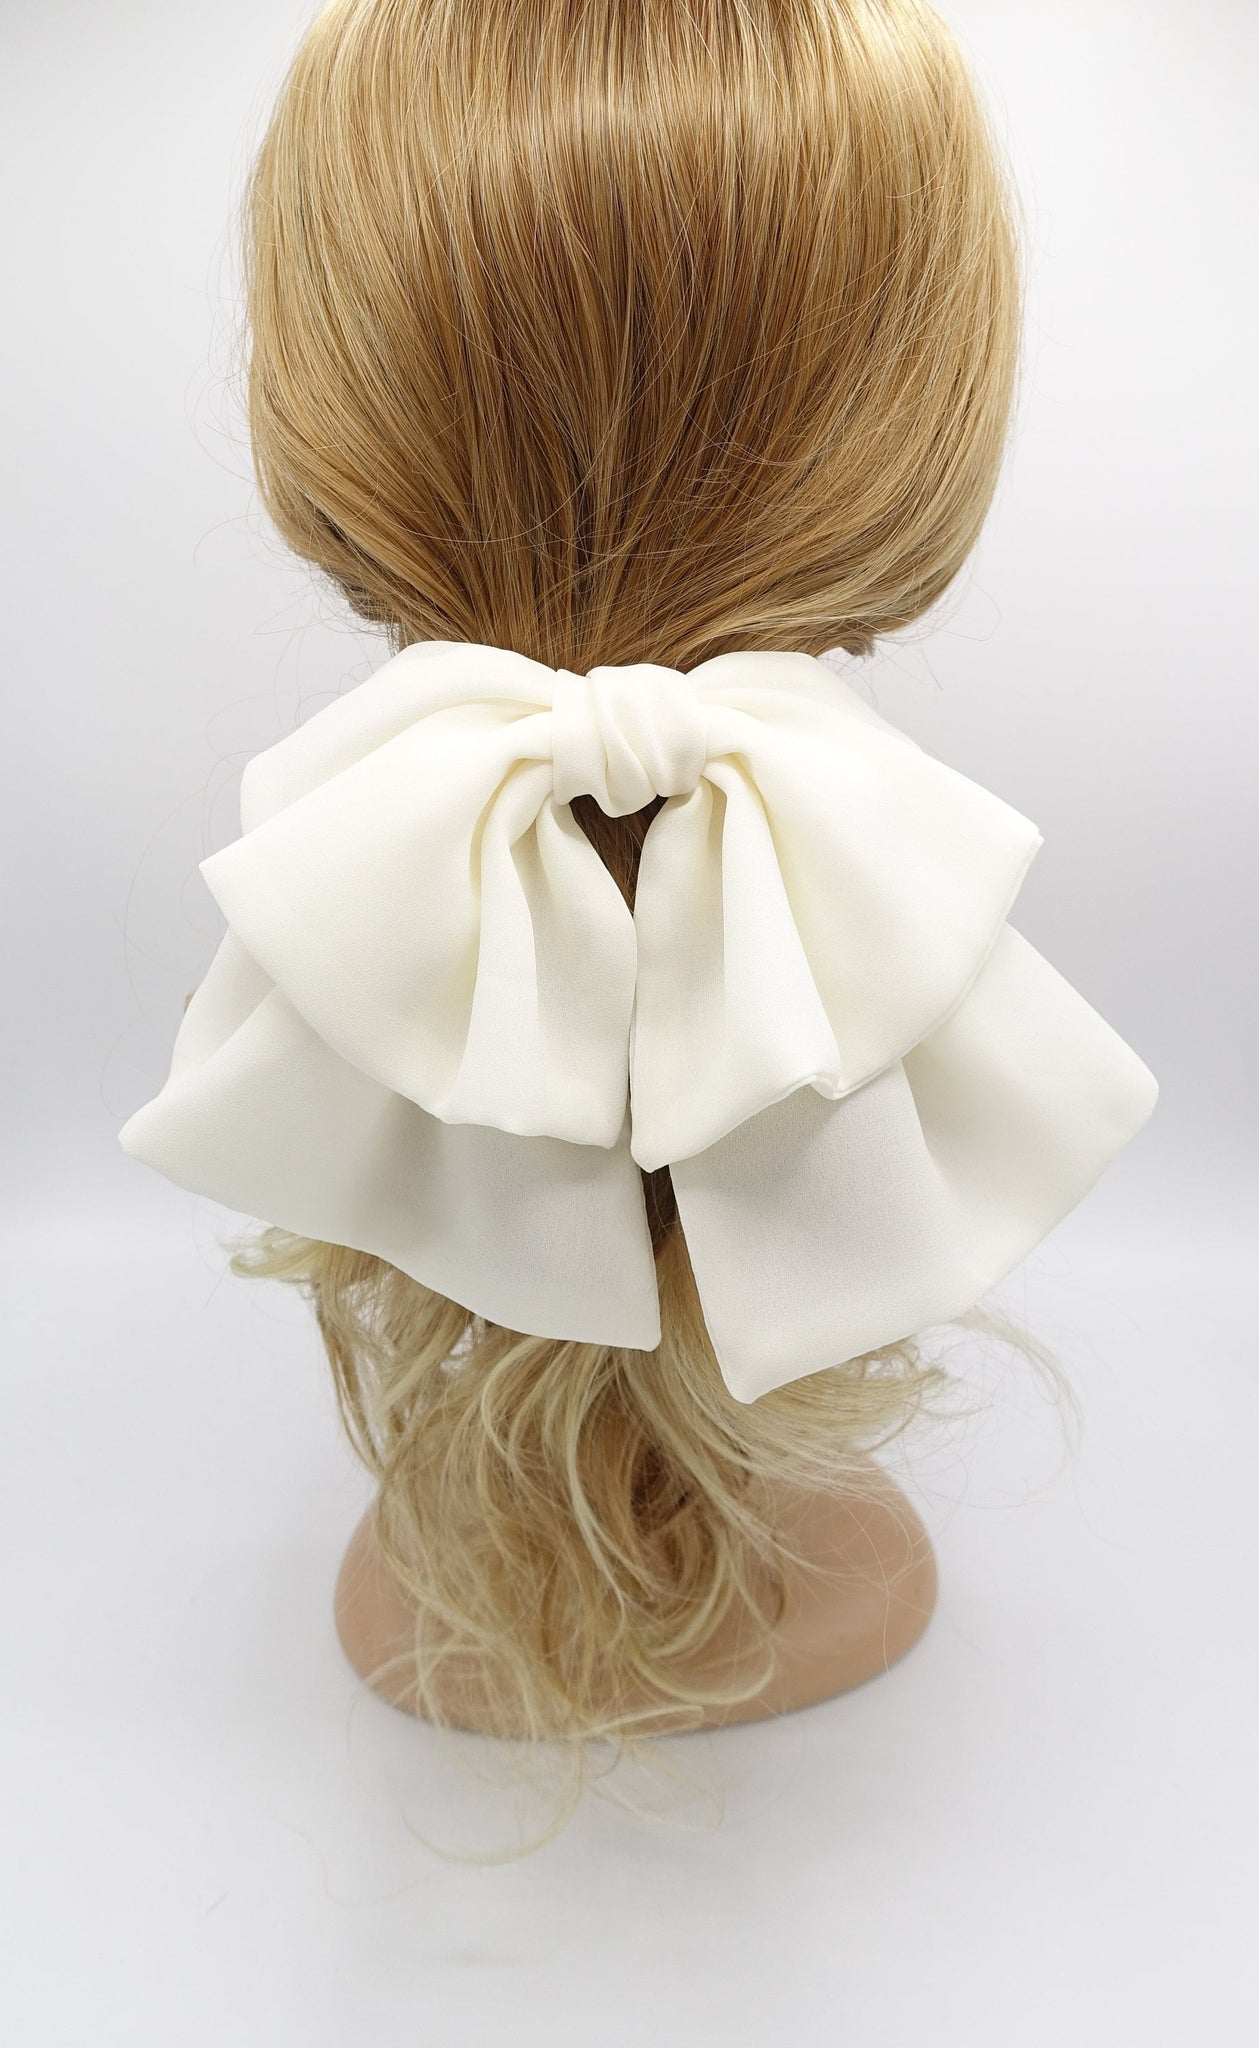 veryshine.com Barrette (Bow) Cream white flair hair bow, large hair bow, chiffon hair bow for women